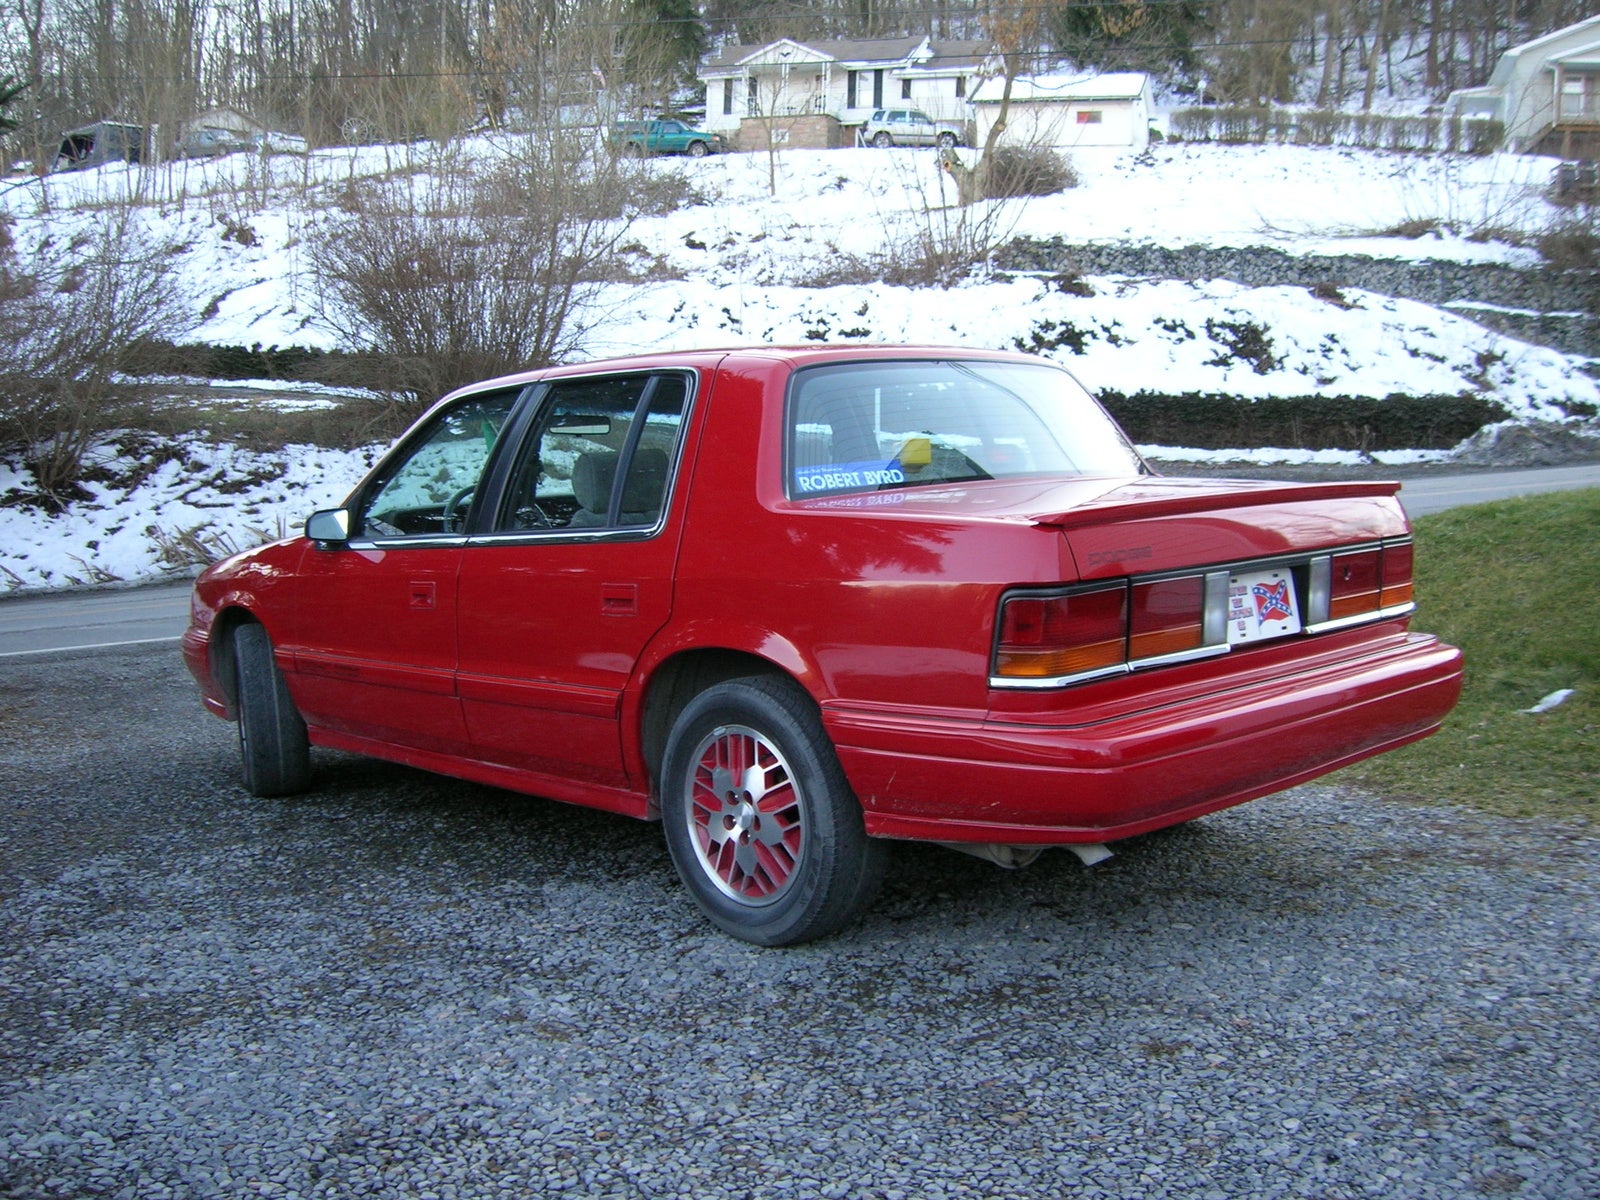 1991 Dodge Spirit - Pictures - 1991 Dodge Spirit 4 Dr R/T Tur ...